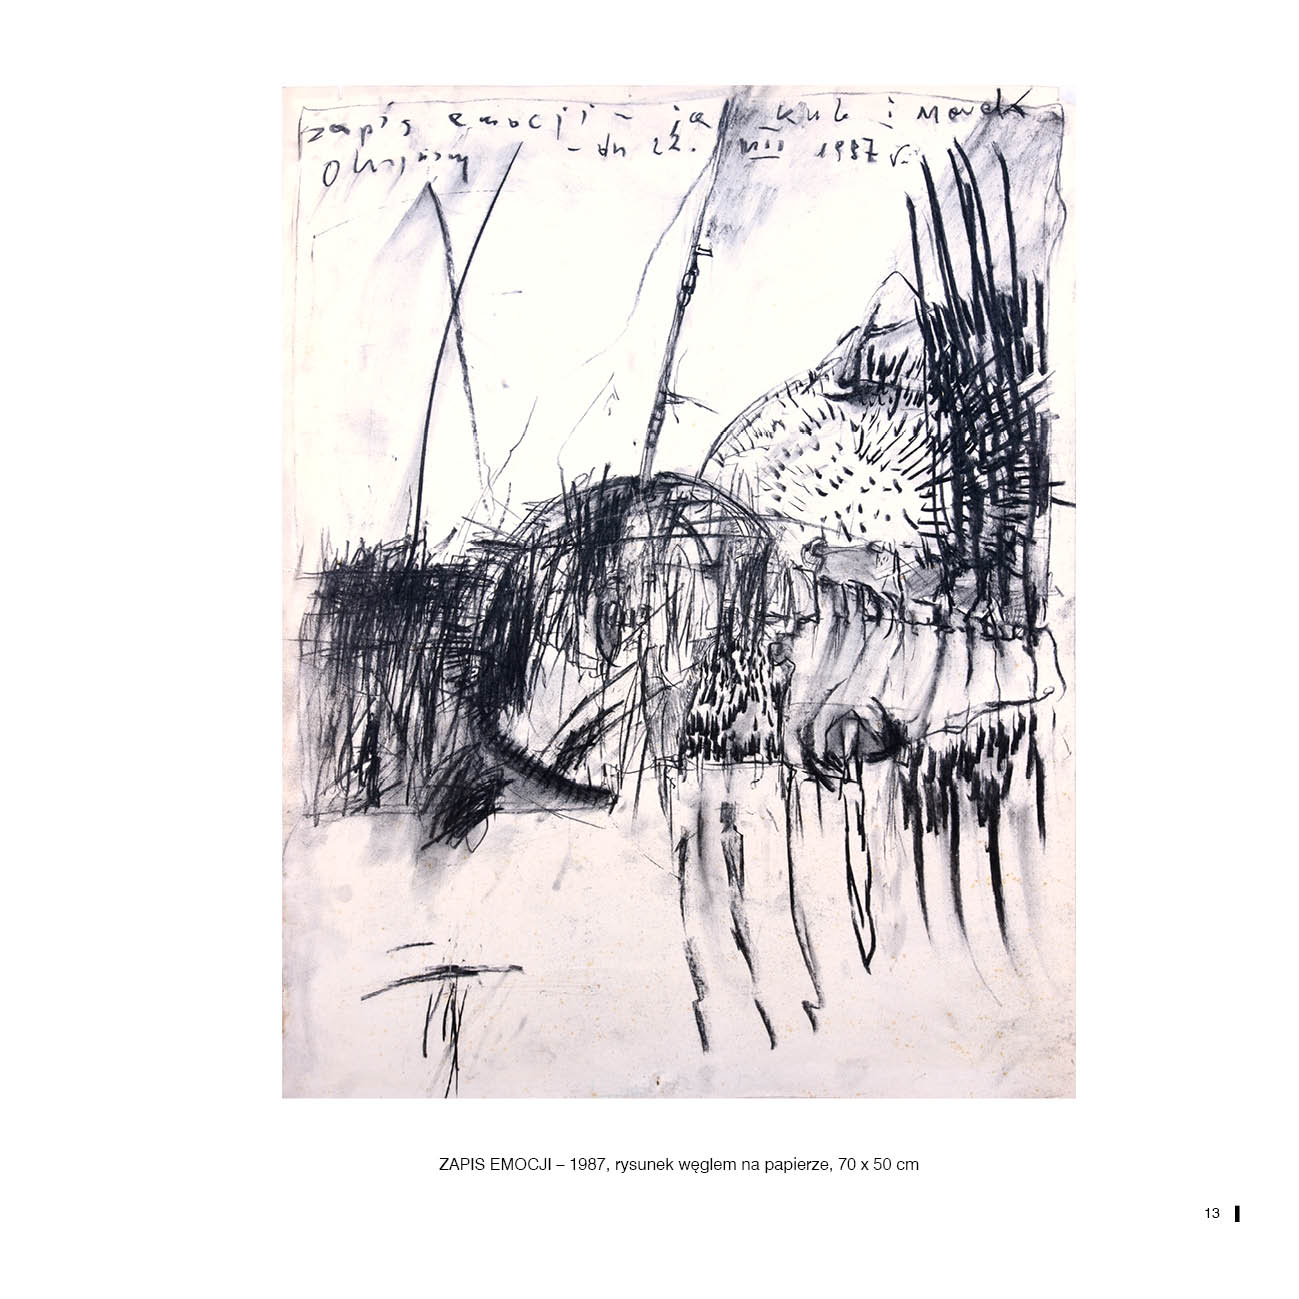 ZAPIS EMOCJI – 1987, rysunek węglem na papierze, 70 x 50 cm